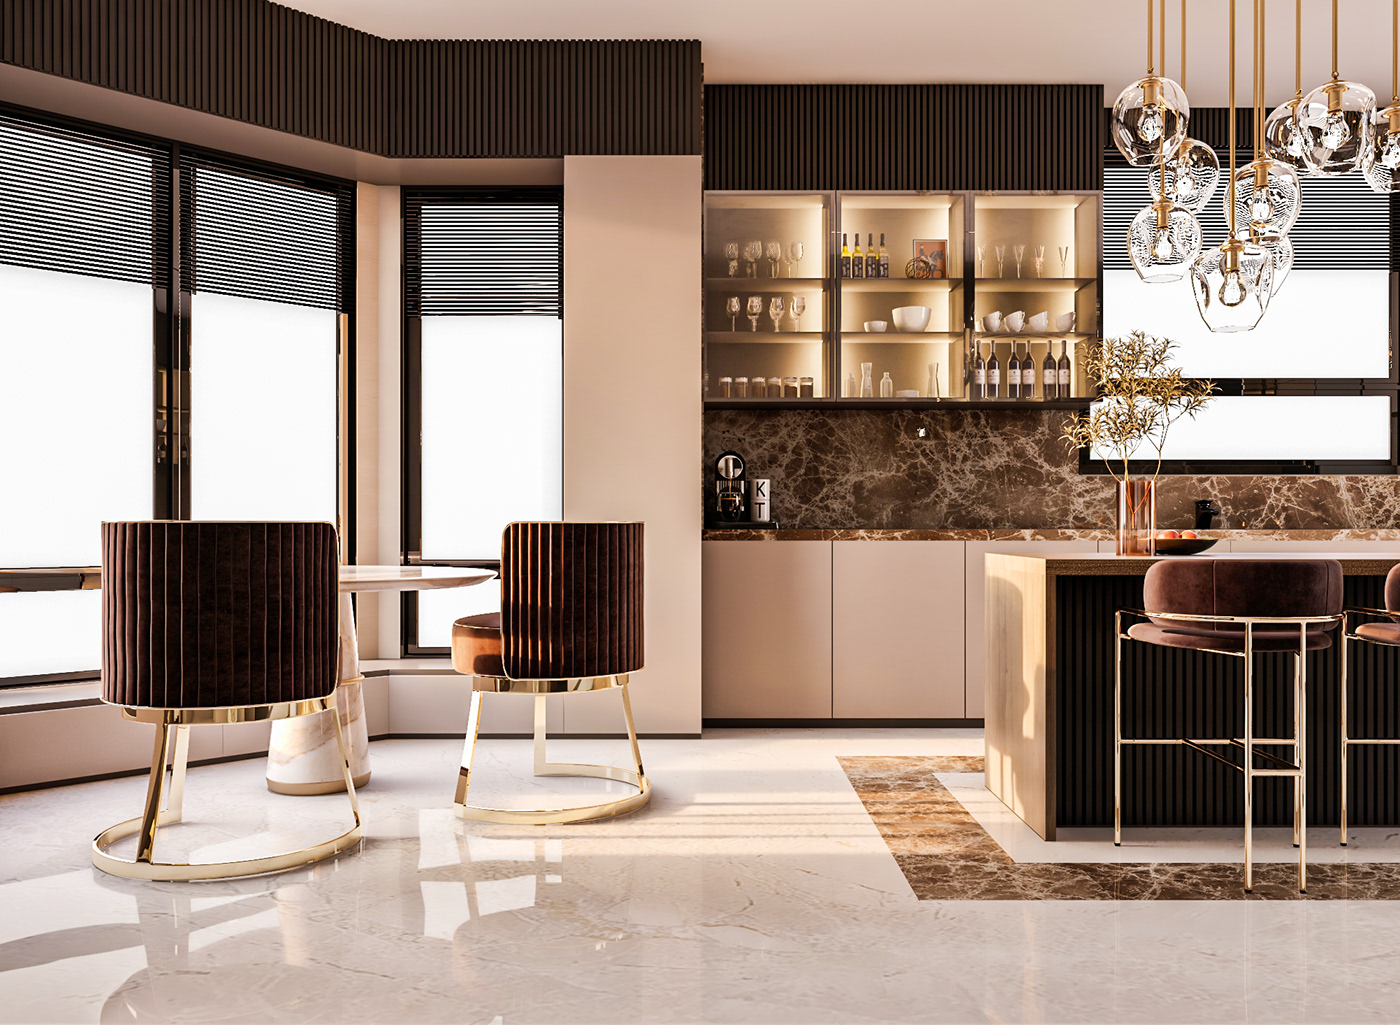 indoor interior design  architecture visualization modern Render 3ds max kitchen kitchen design luxury